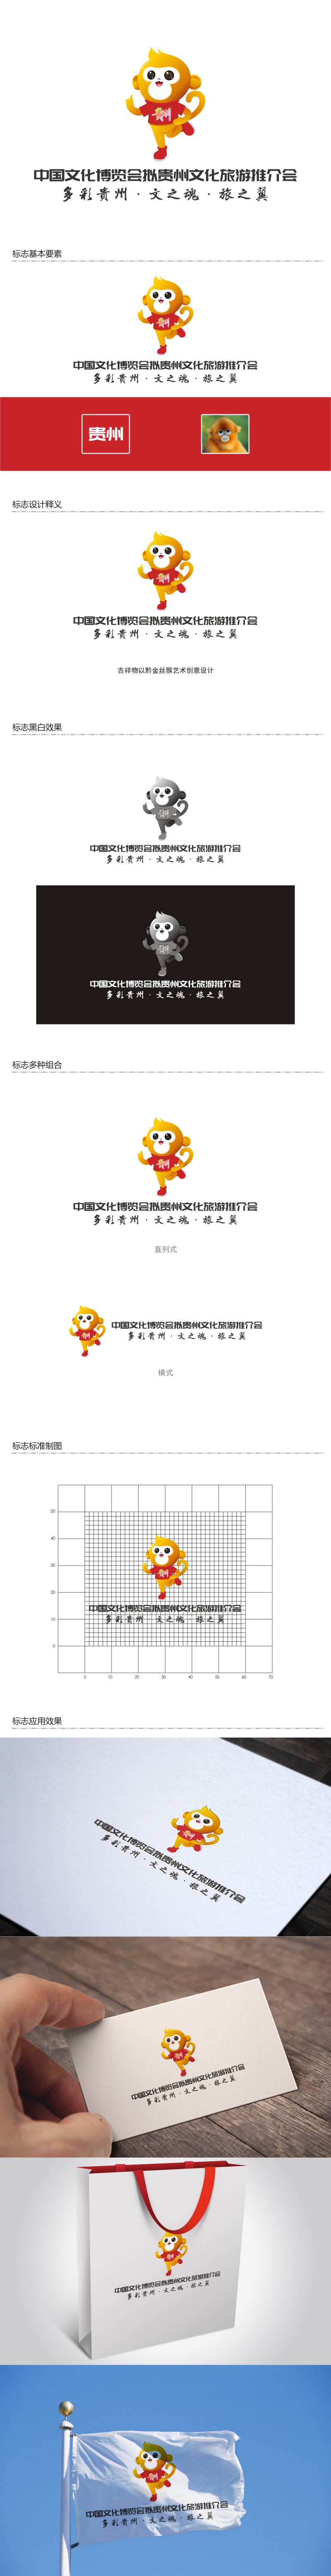 陈国伟的中国文化博览会拟贵州文化旅游推介会logo设计